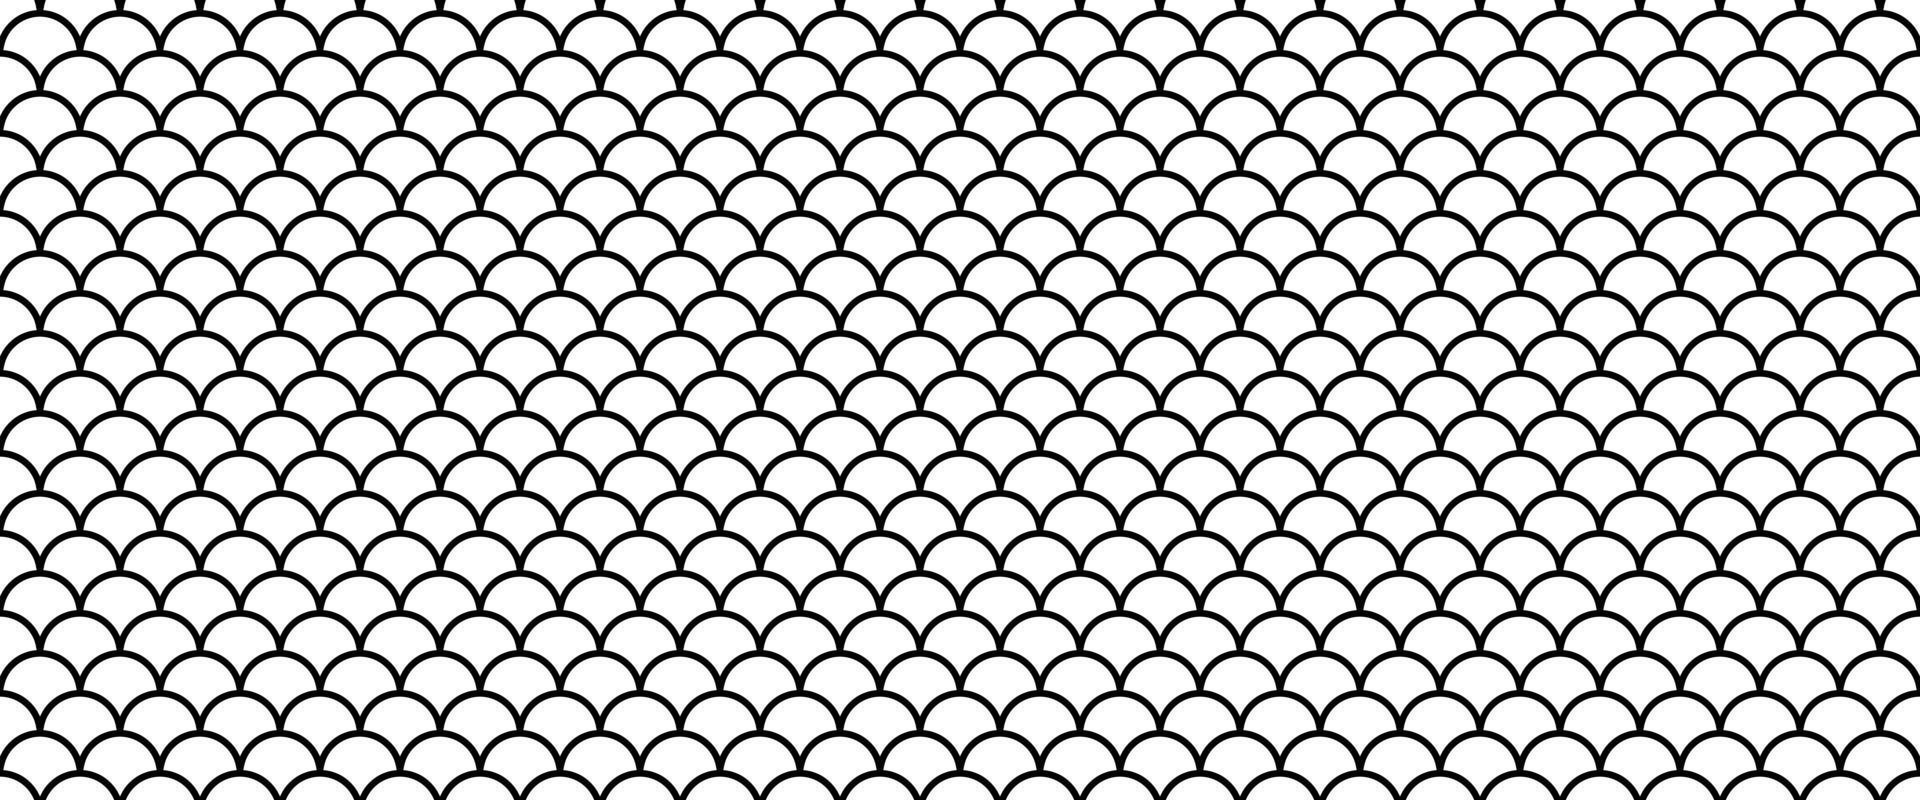 esquema de escamas de pescado patrón sin costuras.dibujo a mano patrón de piel de pescado vector